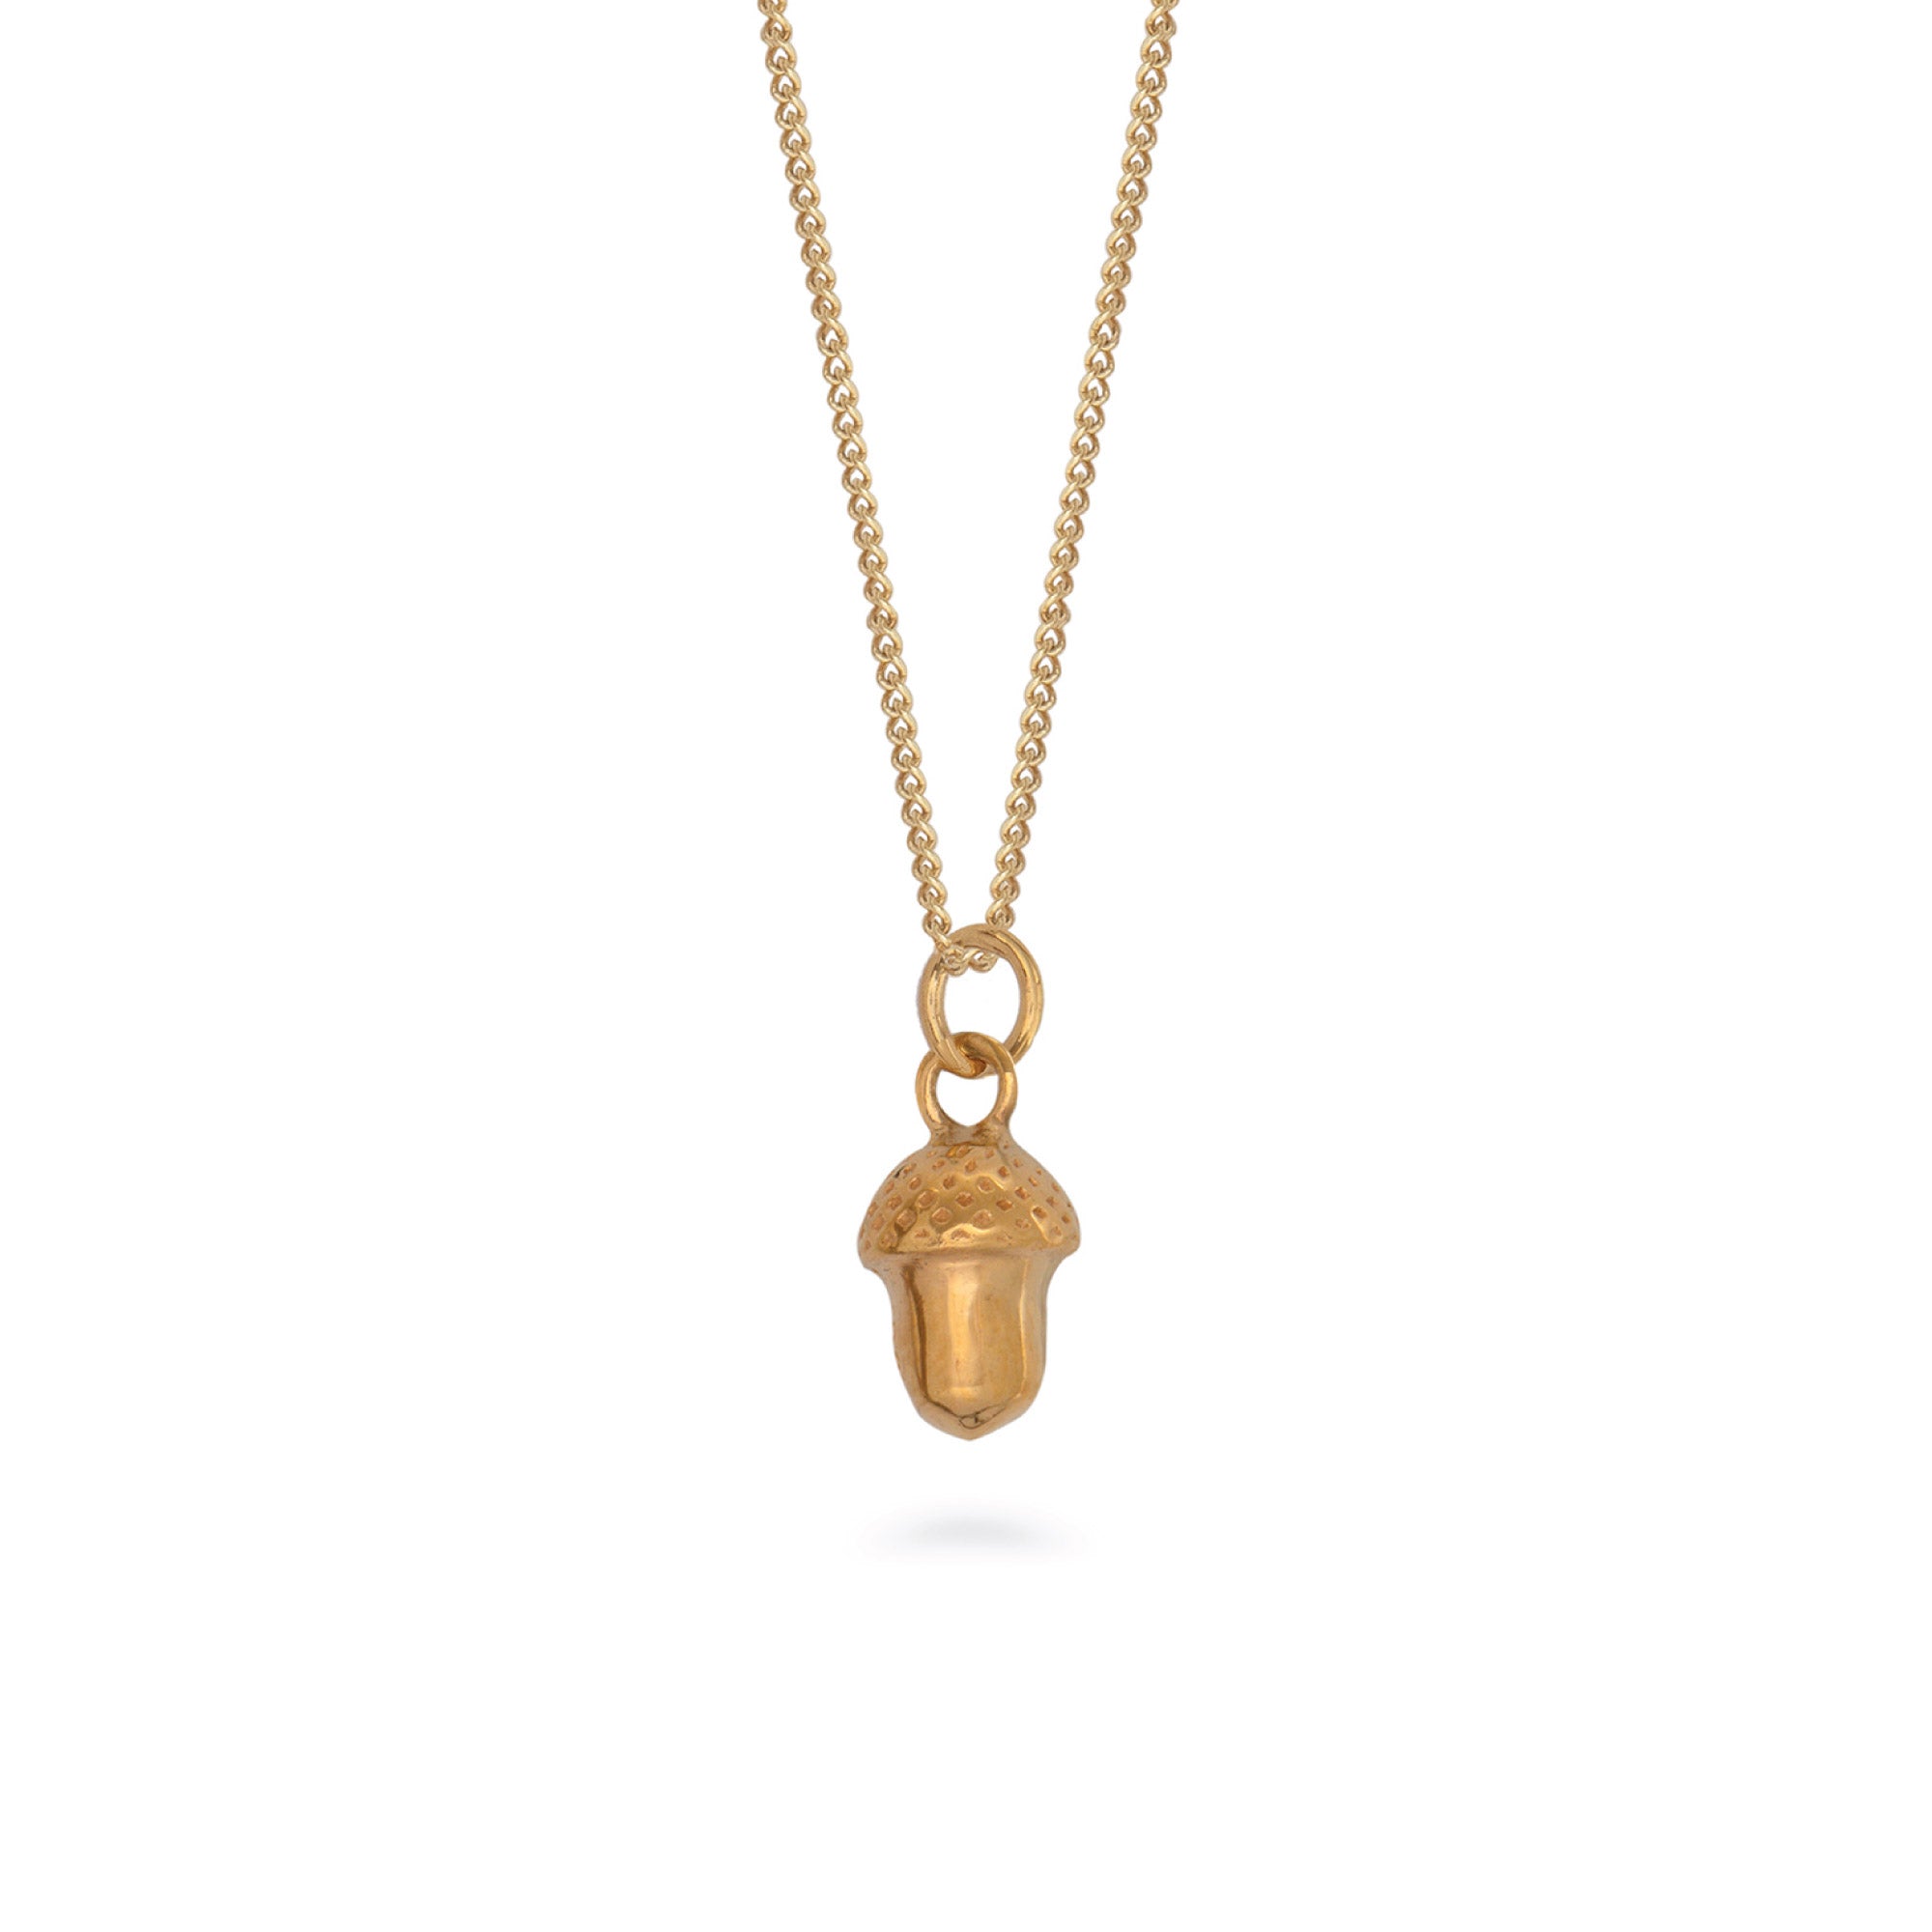 Acorn Pendant Necklace Gold Vermeil